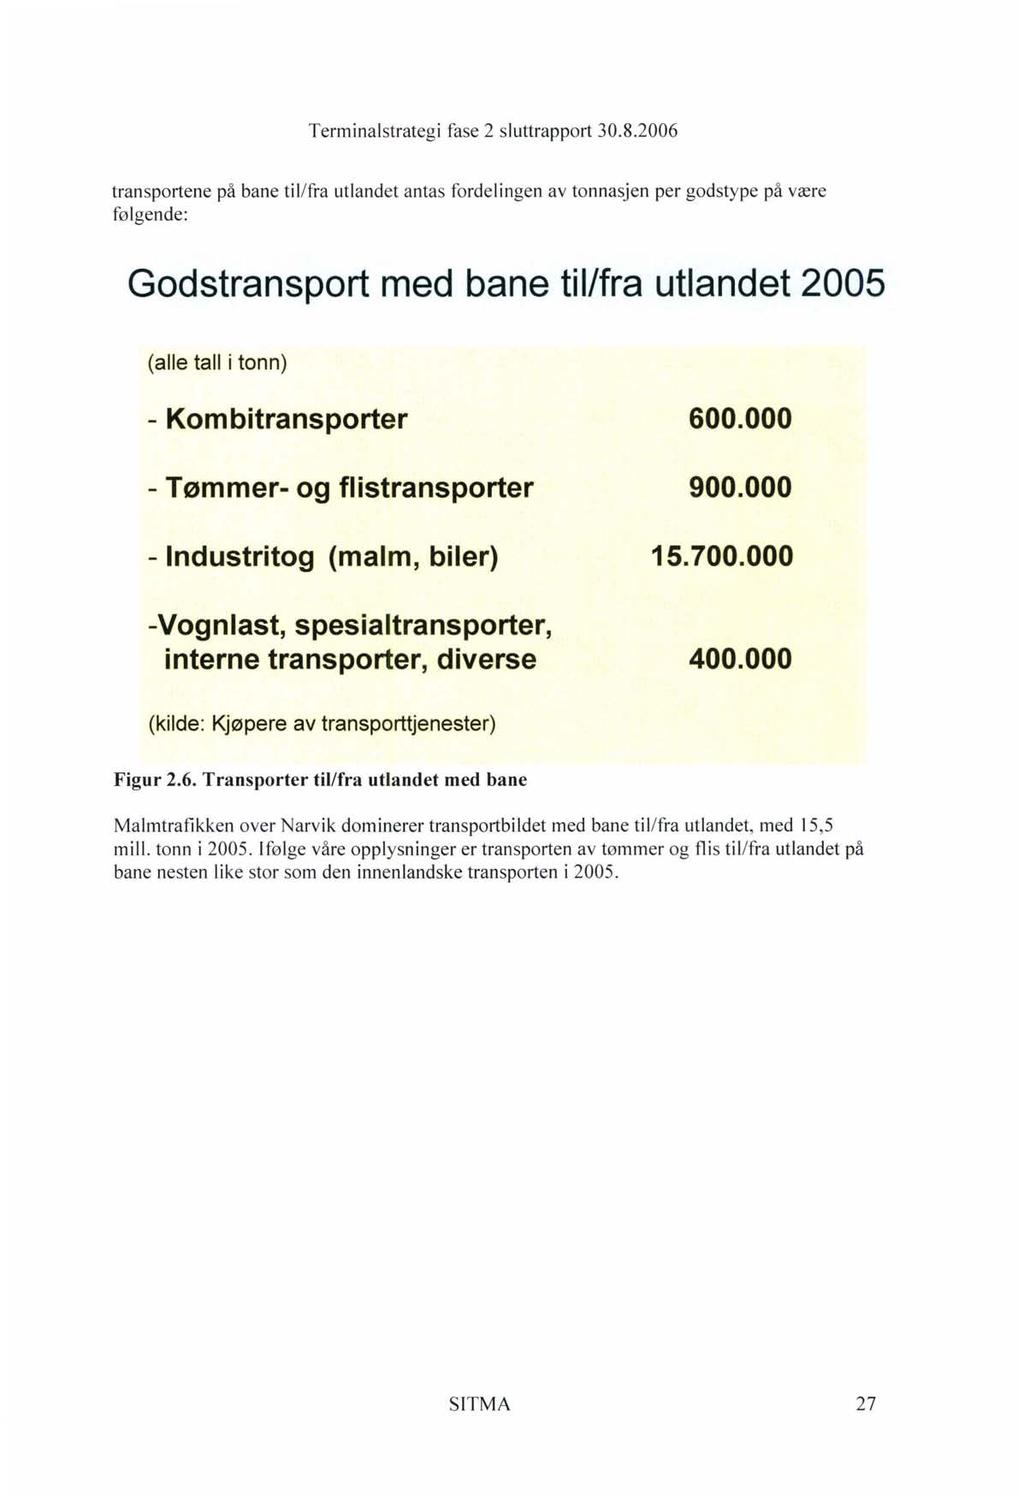 transportene på bane til/fra utlandet antas fordelingen av tonnasjen per godstype på være følgende: Godstransport med bane til/fra utlandet 2005 (alle tall i tonn) - Kombitransporter - Tømmer- og